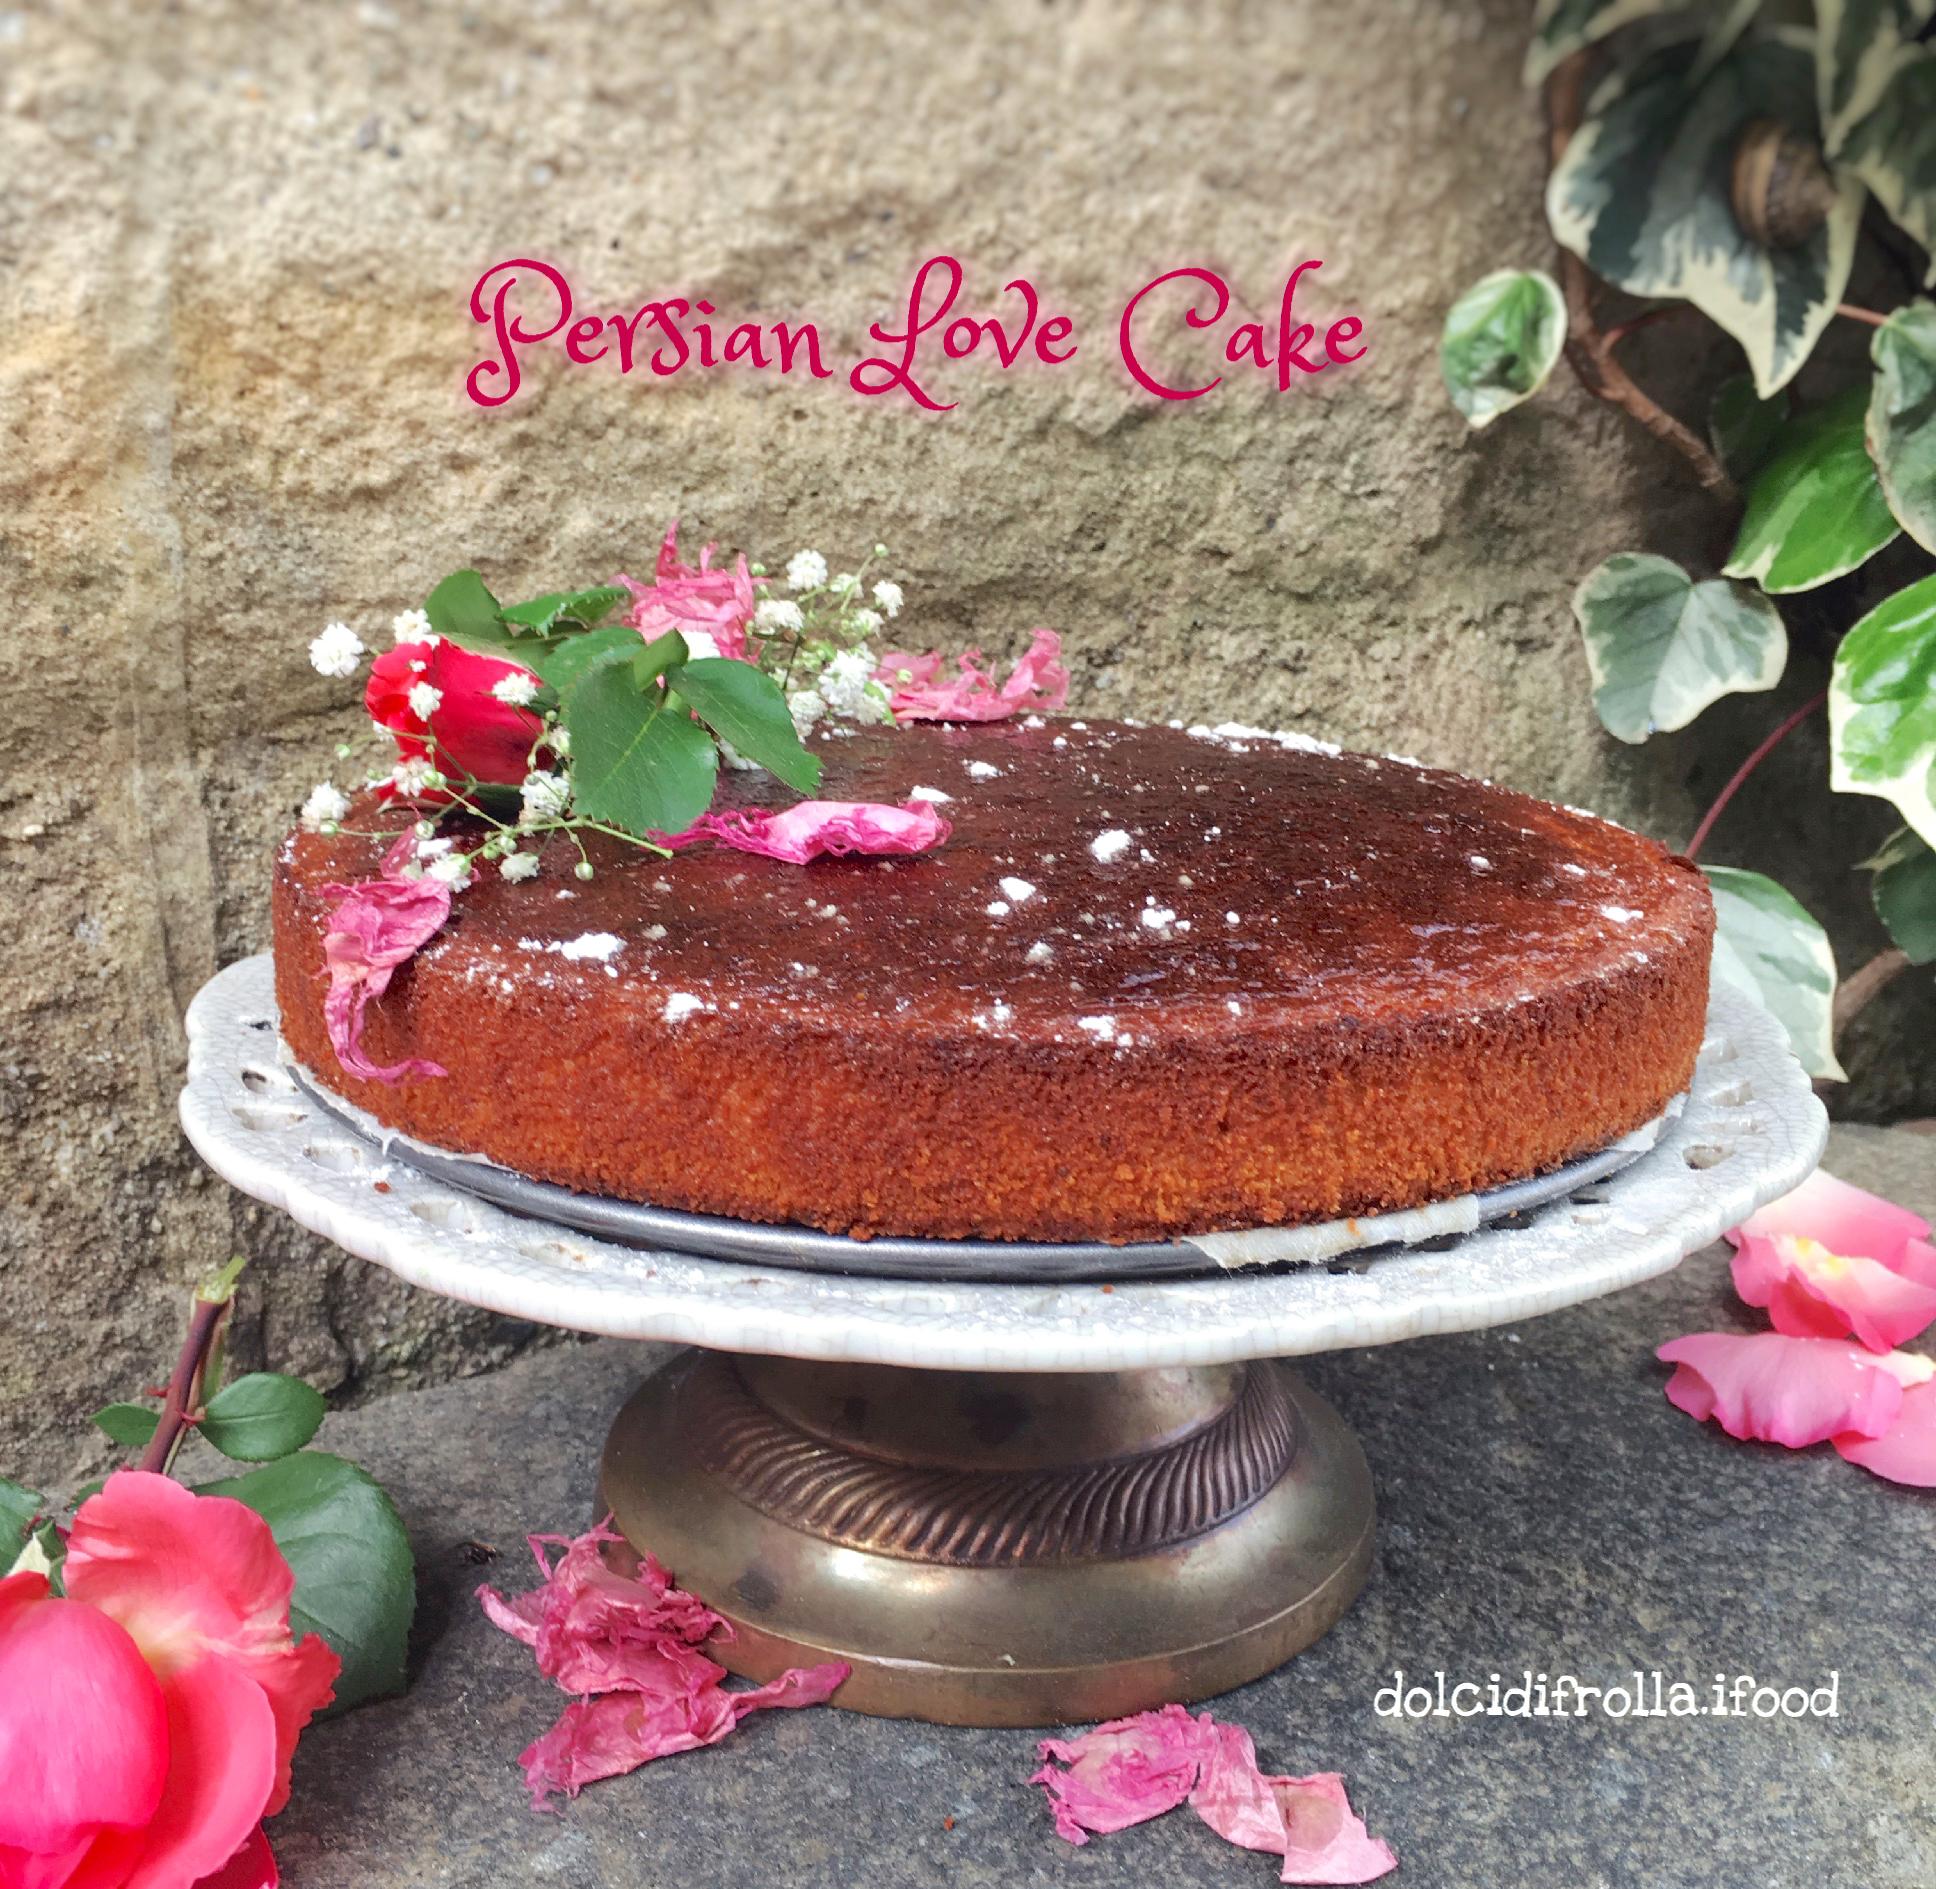 PERSIAN LOVE CAKE